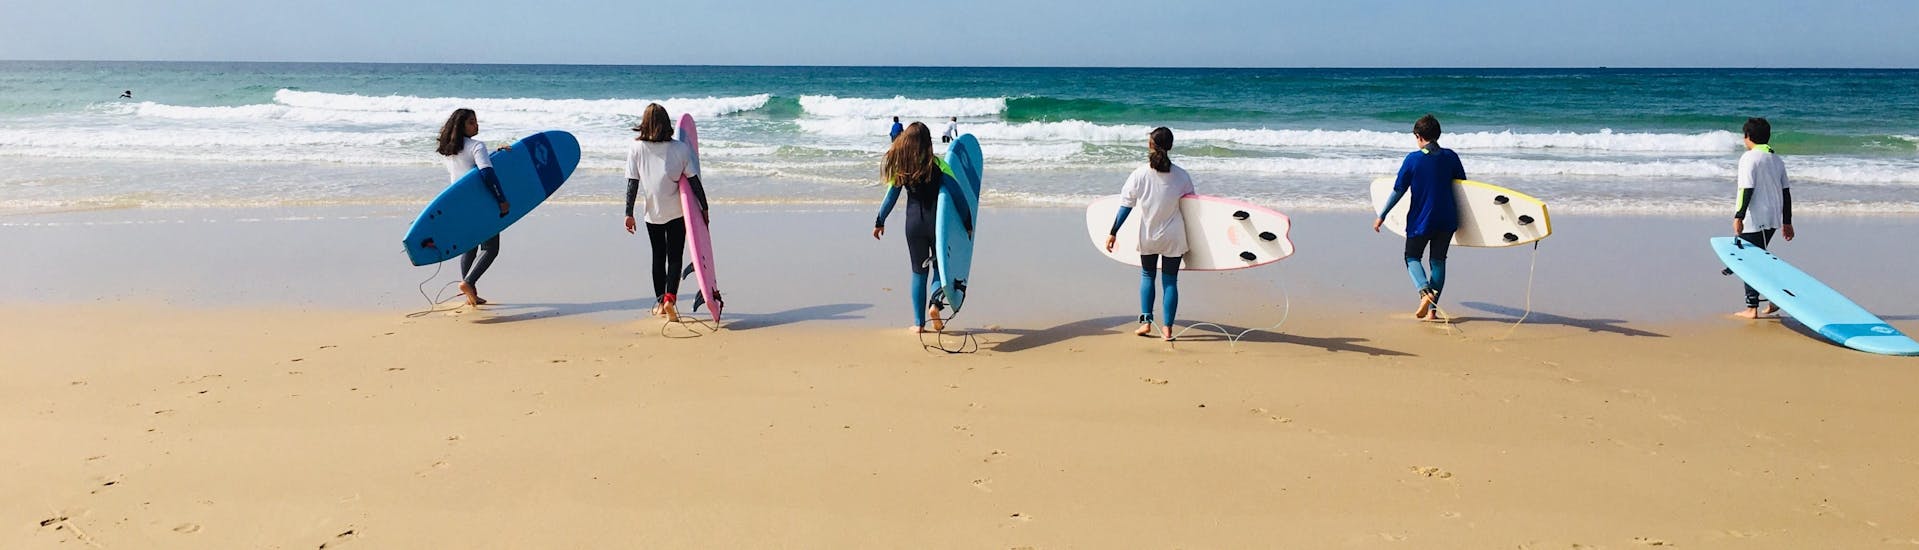 Een groep studenten gaat naar de zee om hun surflessen voor alle niveaus vanaf 8 jaar te krijgen met It's On Surf School.